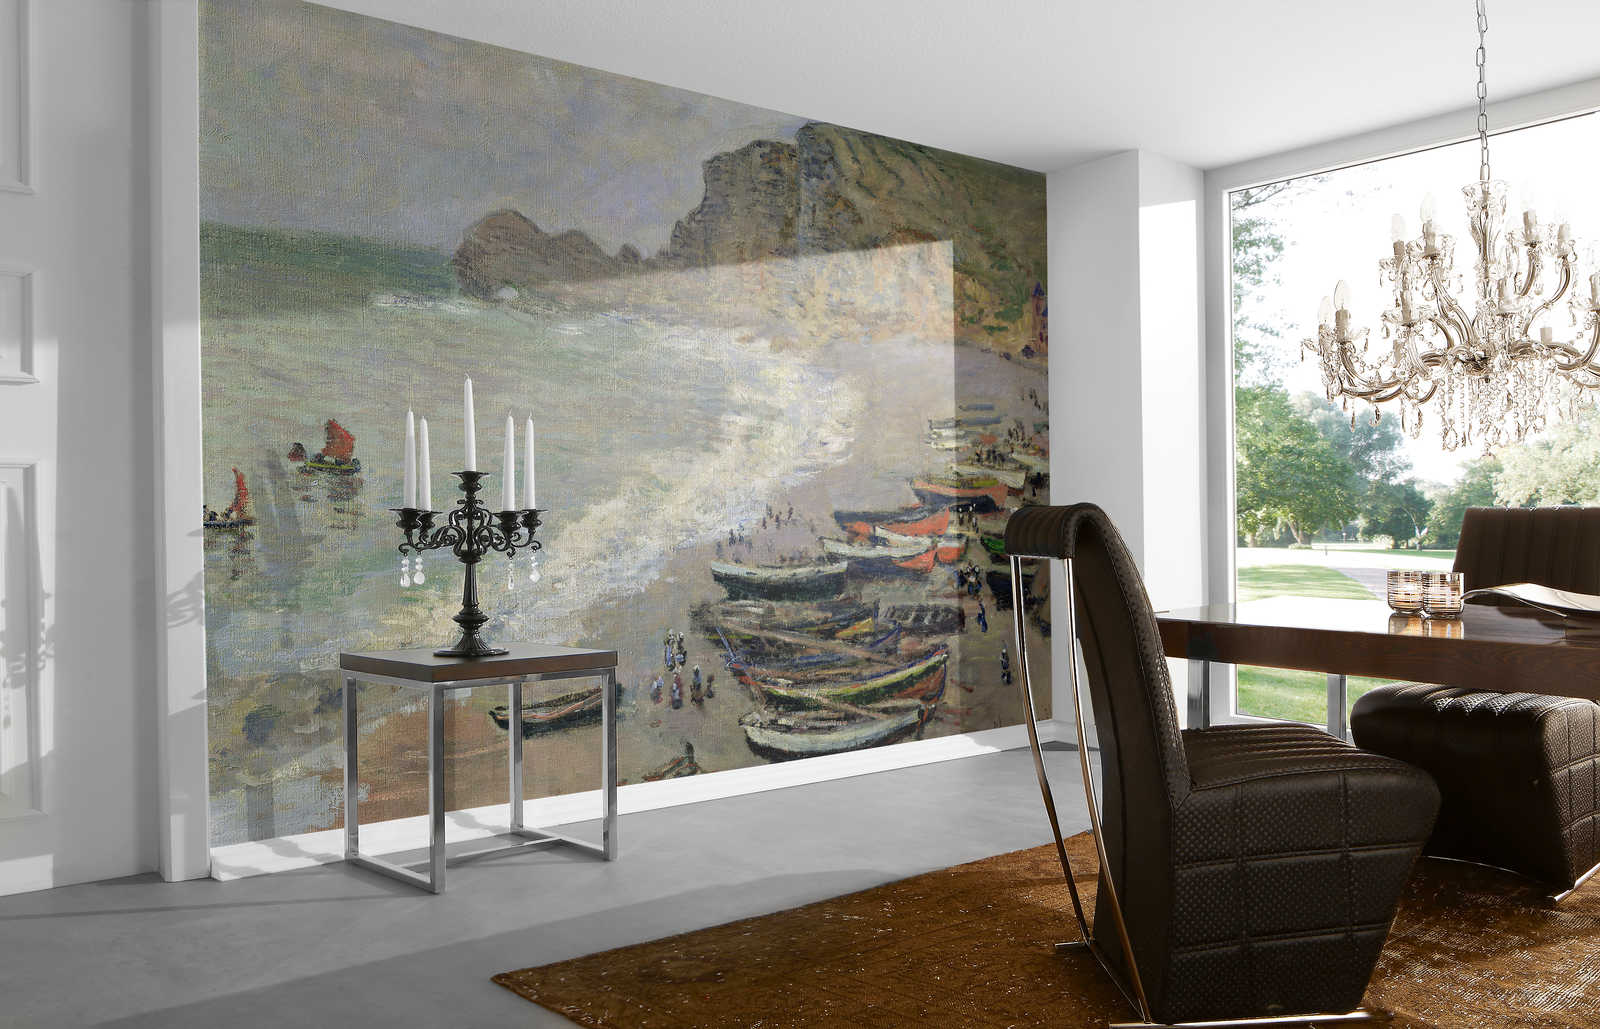             Muurschildering "Etretat, strand en de Porte d'Amont" van Claude Monet
        